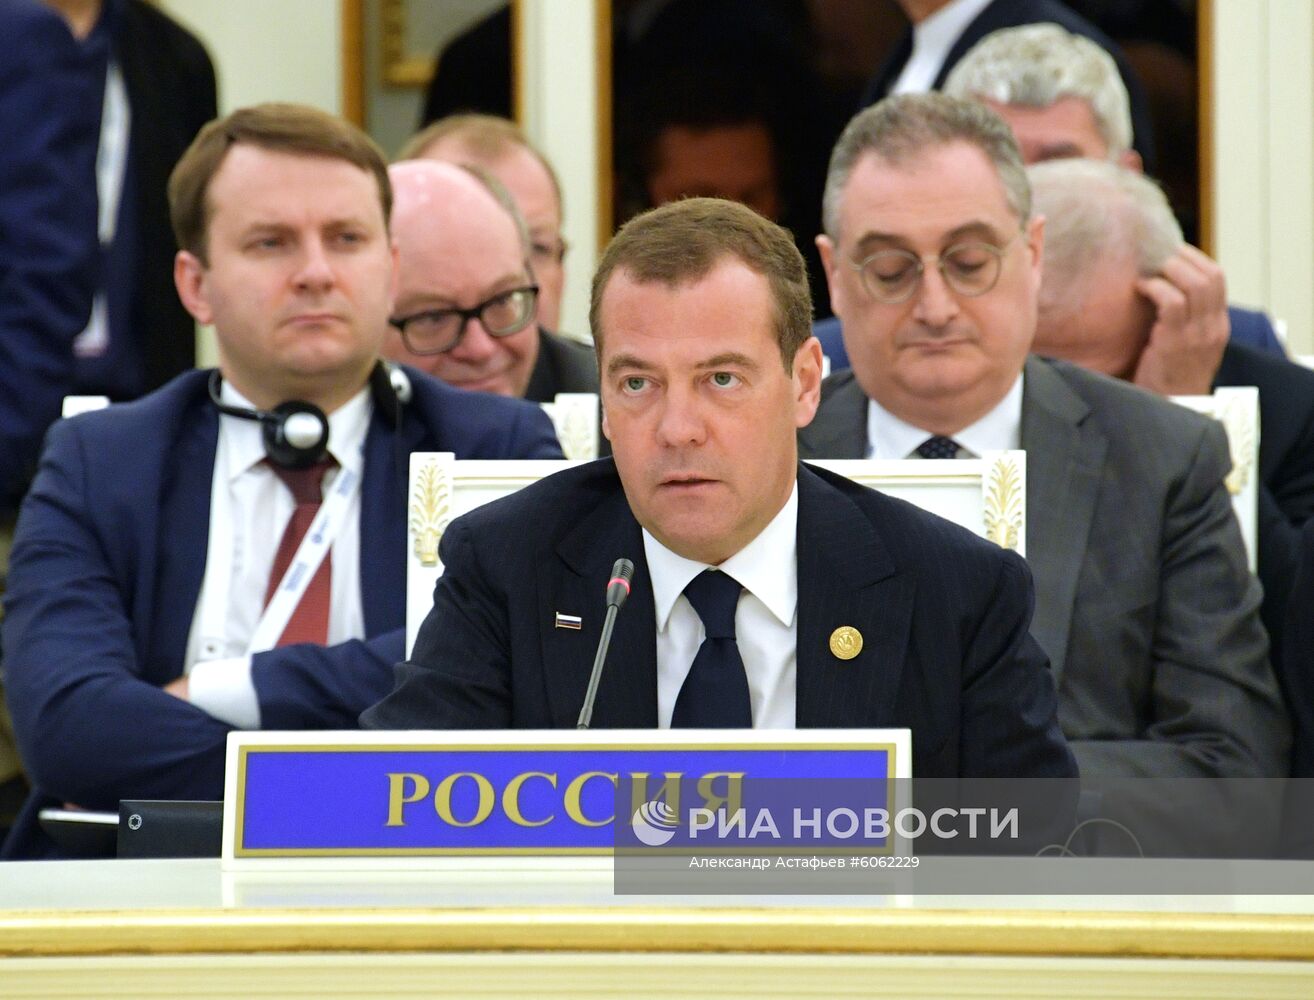 Заседание Совета глав правительств государств - членов ШОС в Ташкенте